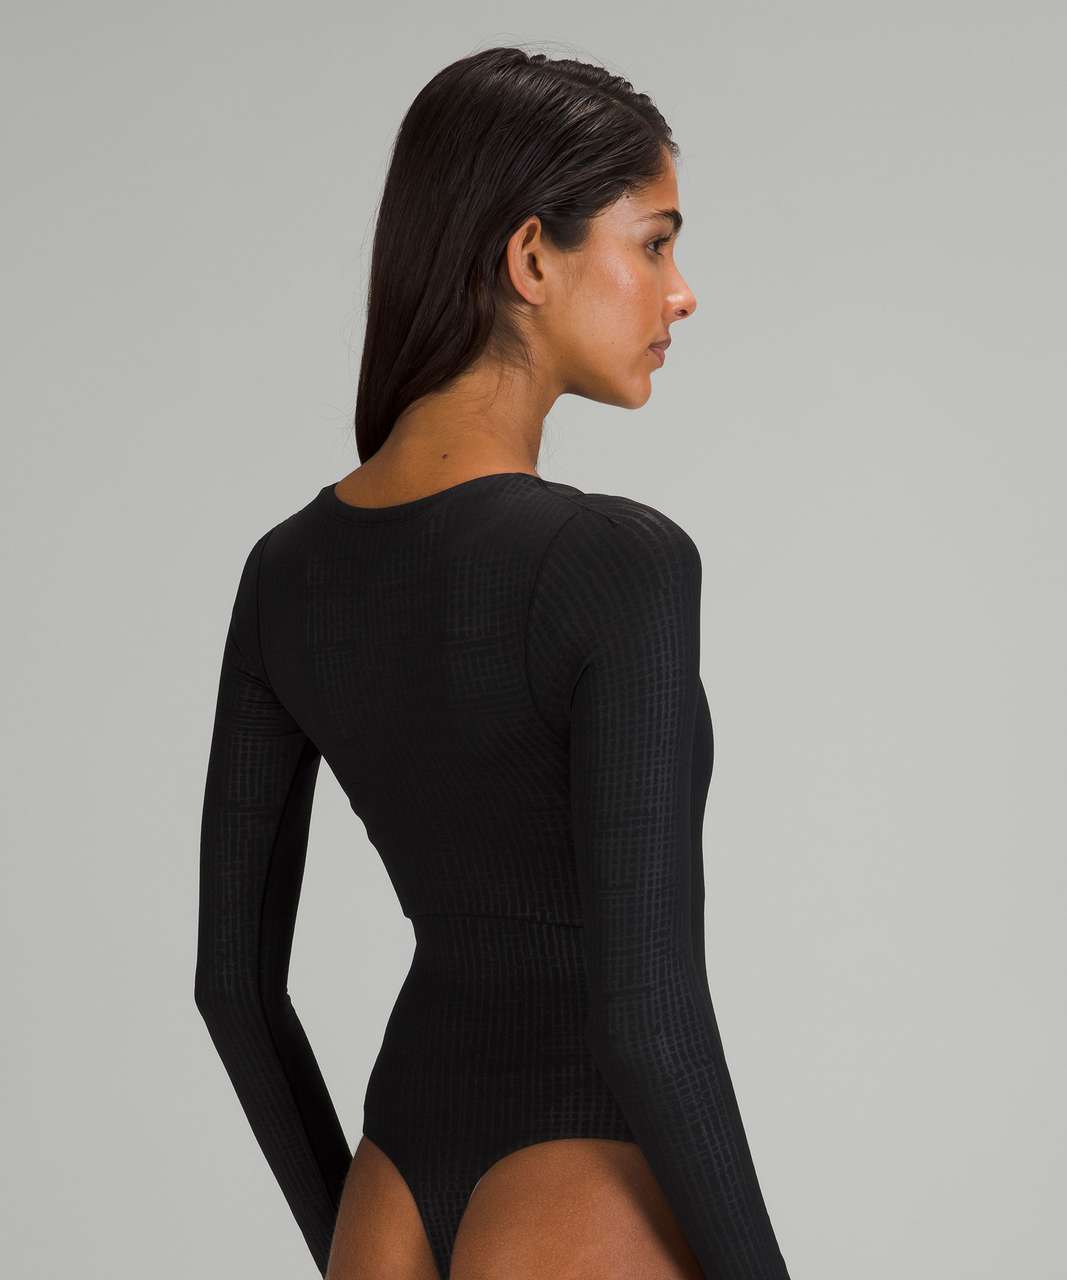 Black Ribbed Bodysuit - Turtleneck Bodysuit - Long Sleeve Top - Lulus